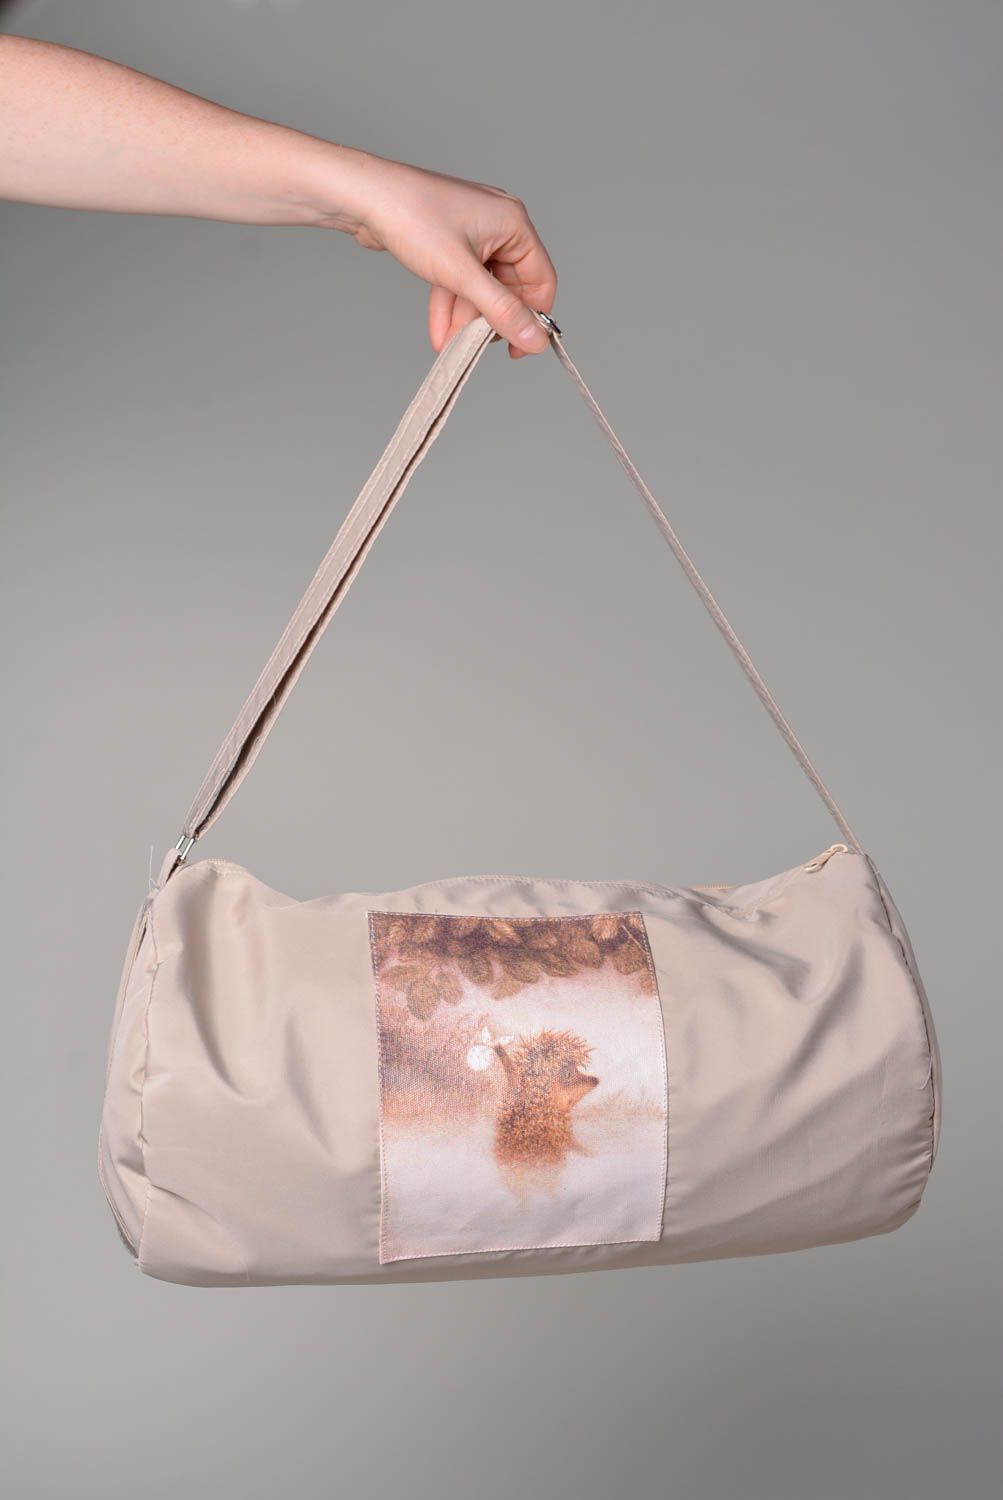 Сумка ручной работы женская сумка стильная оригинальная тканевая сумка Ежик фото 4